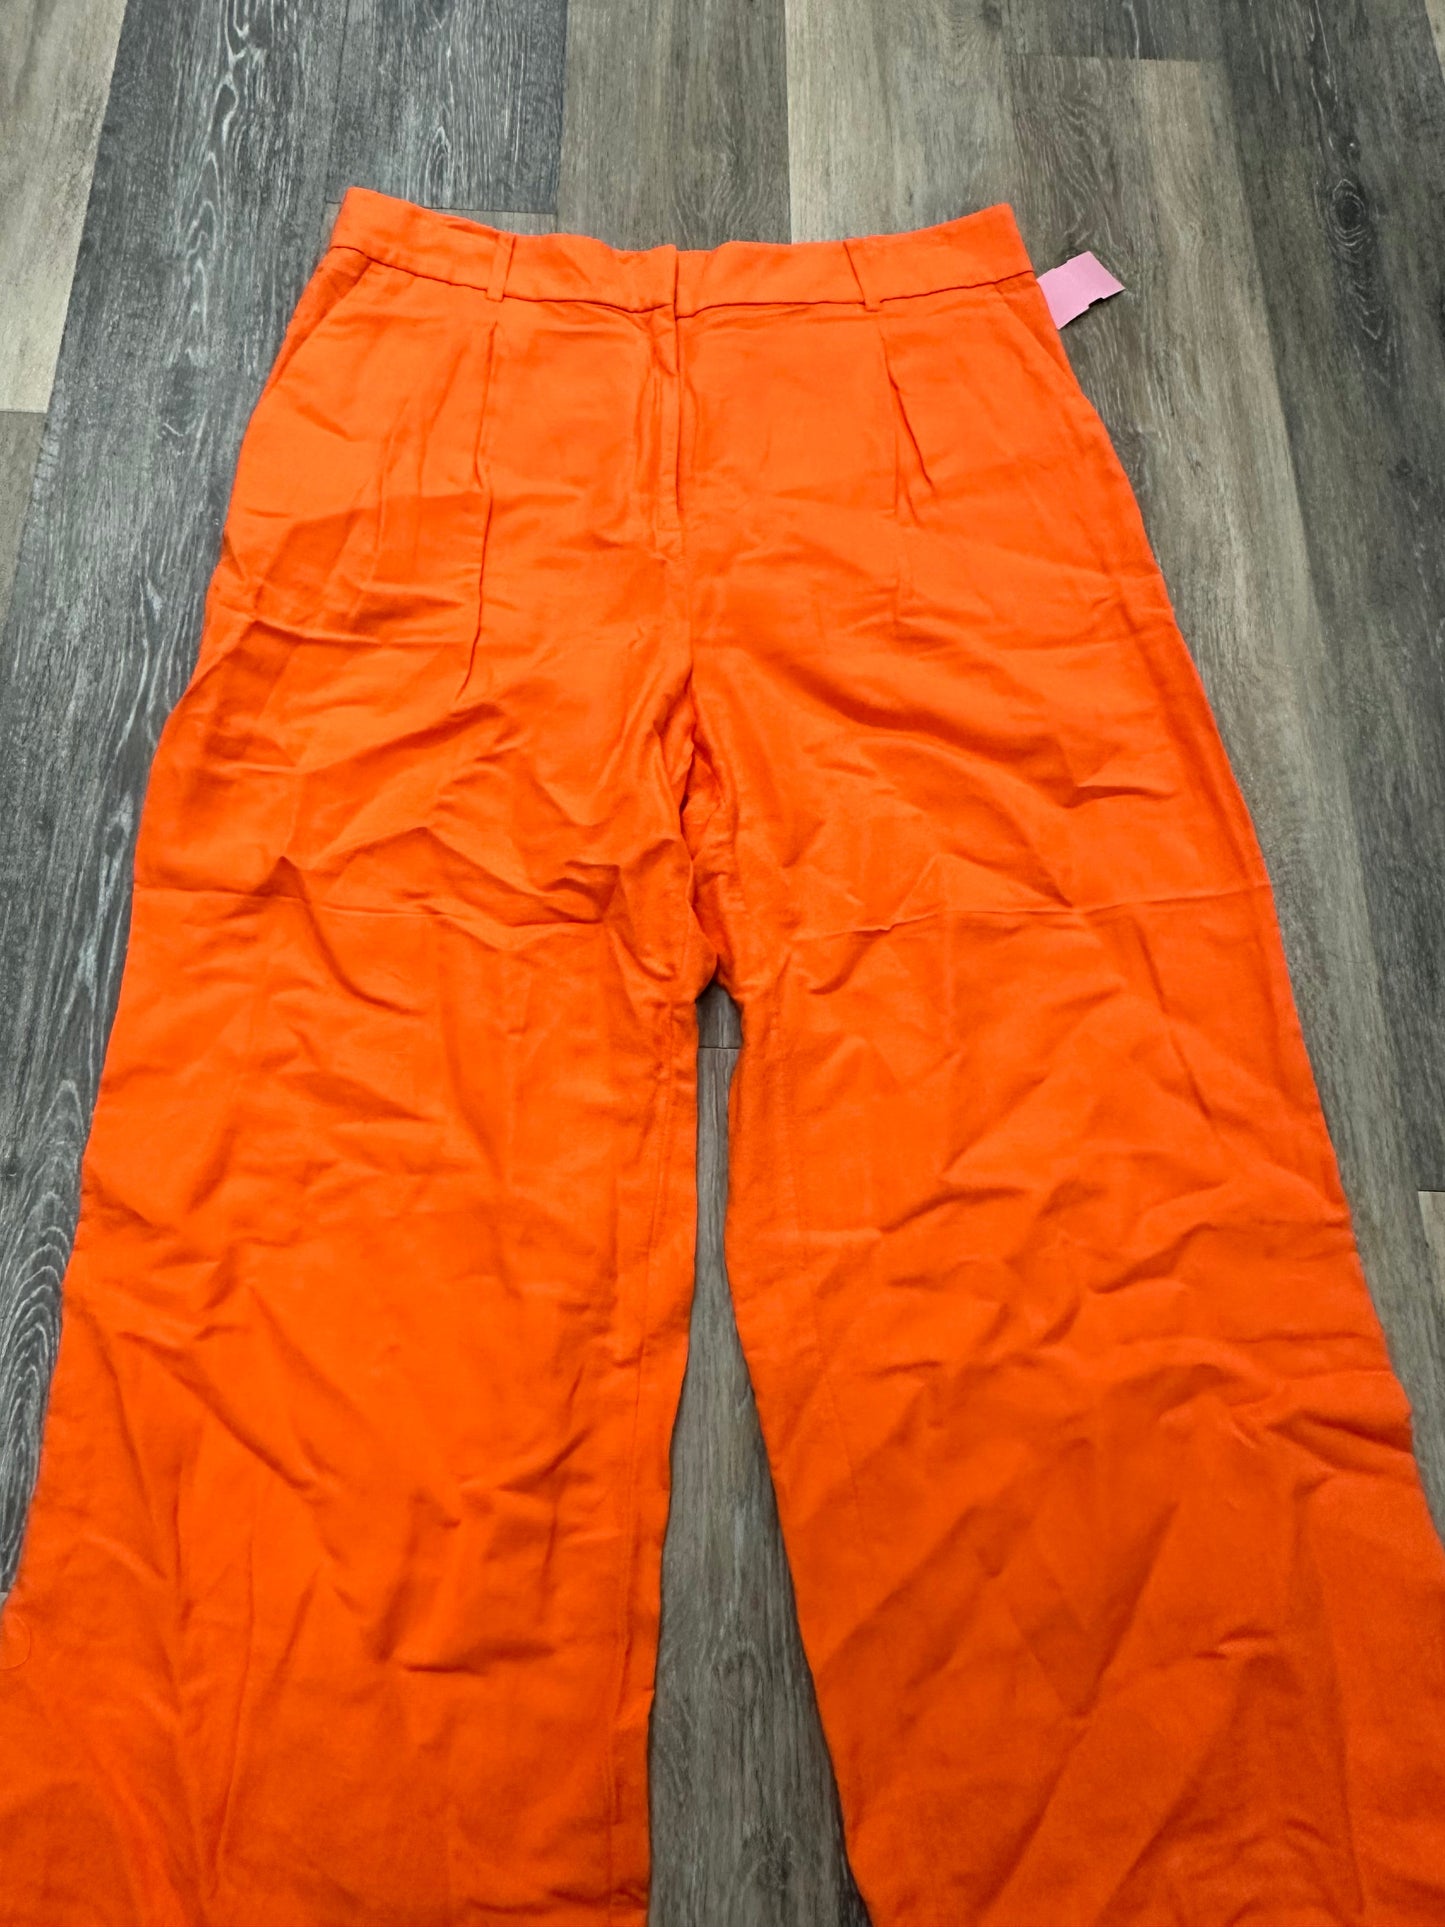 Pants Linen By Loft  Size: 12